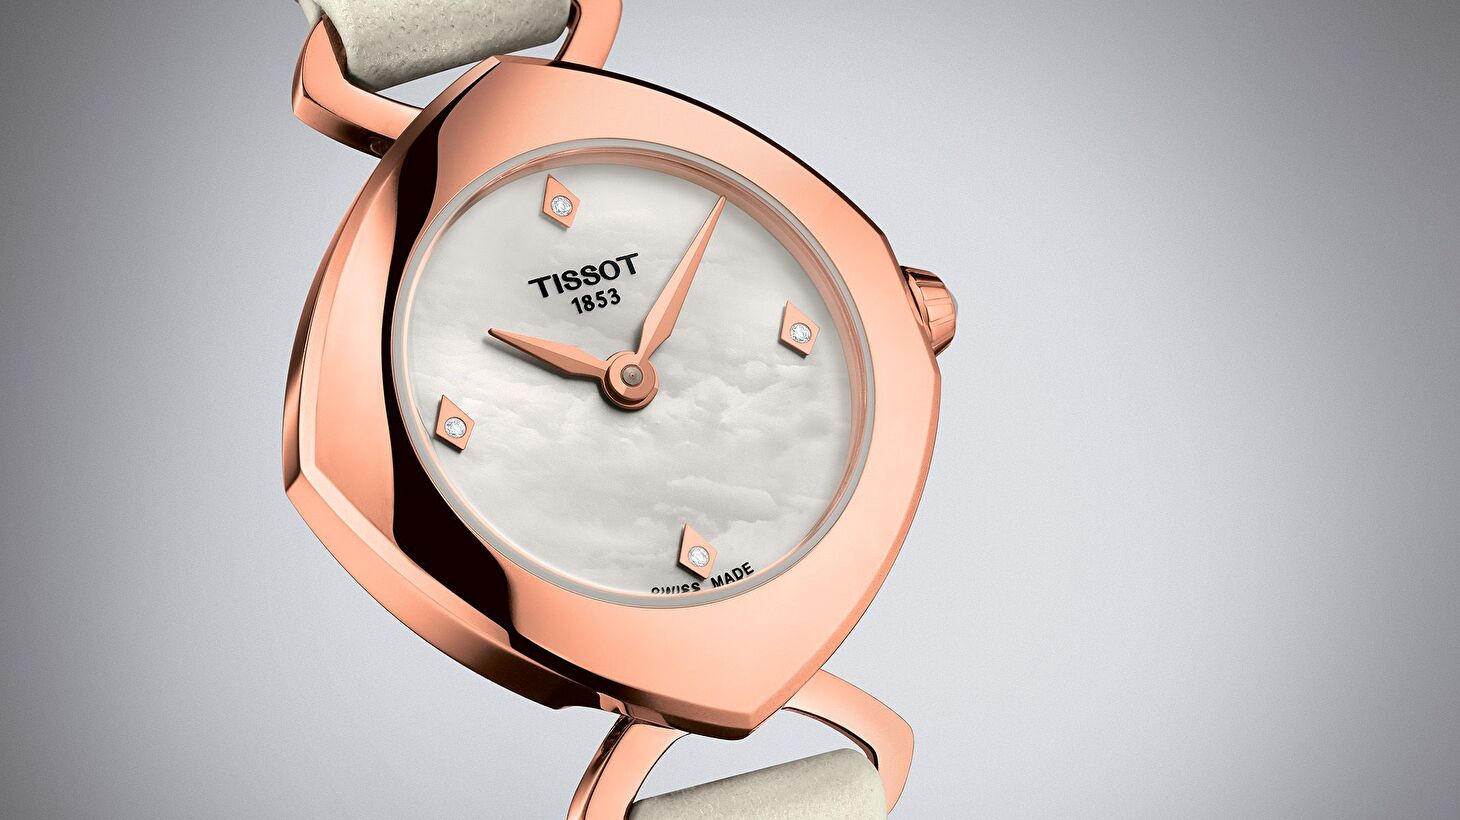 Часы Tissot Femini-T: время для вдохновения